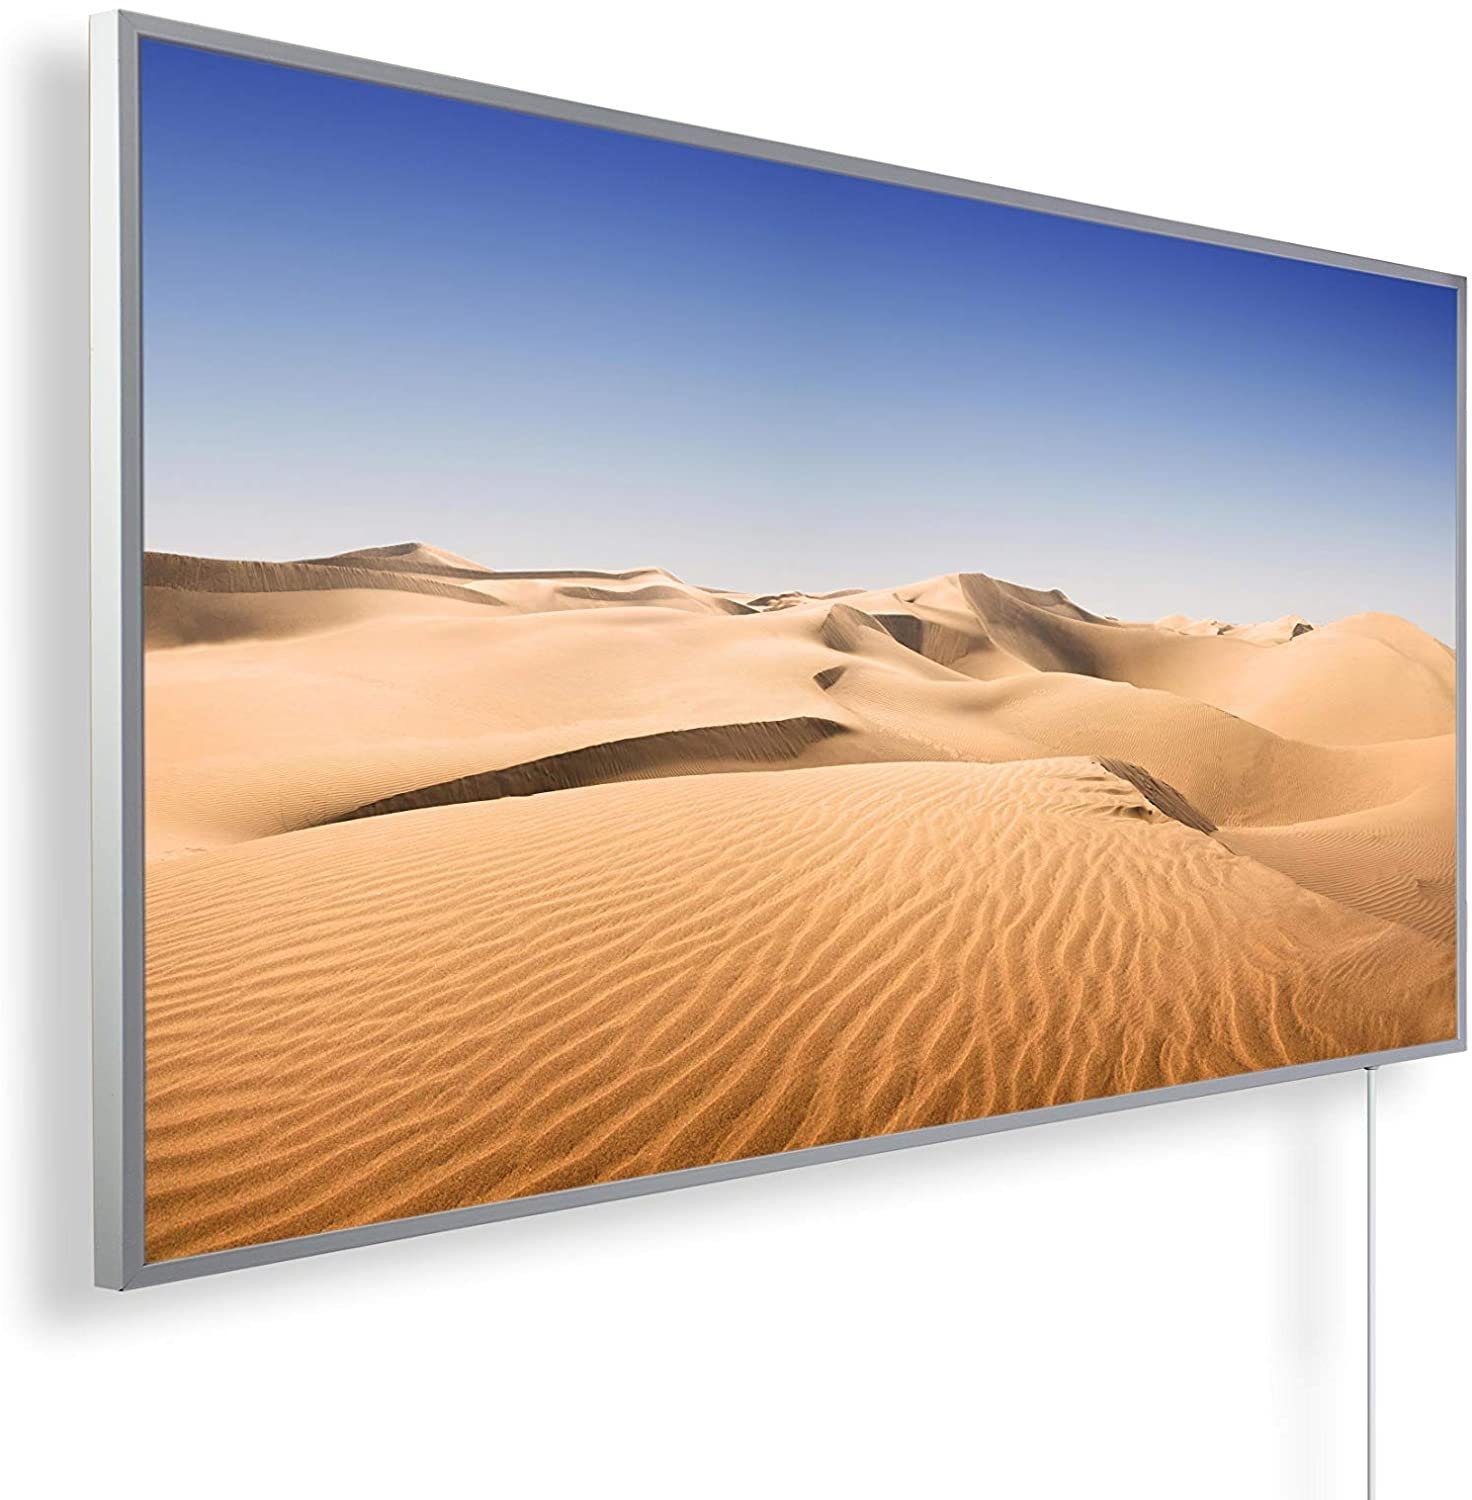 Wüste Made angenehme 600W, Effizienz, hohe in Könighaus Bild-Serie sehr Infrarotheizung Germany, Strahlungswärme